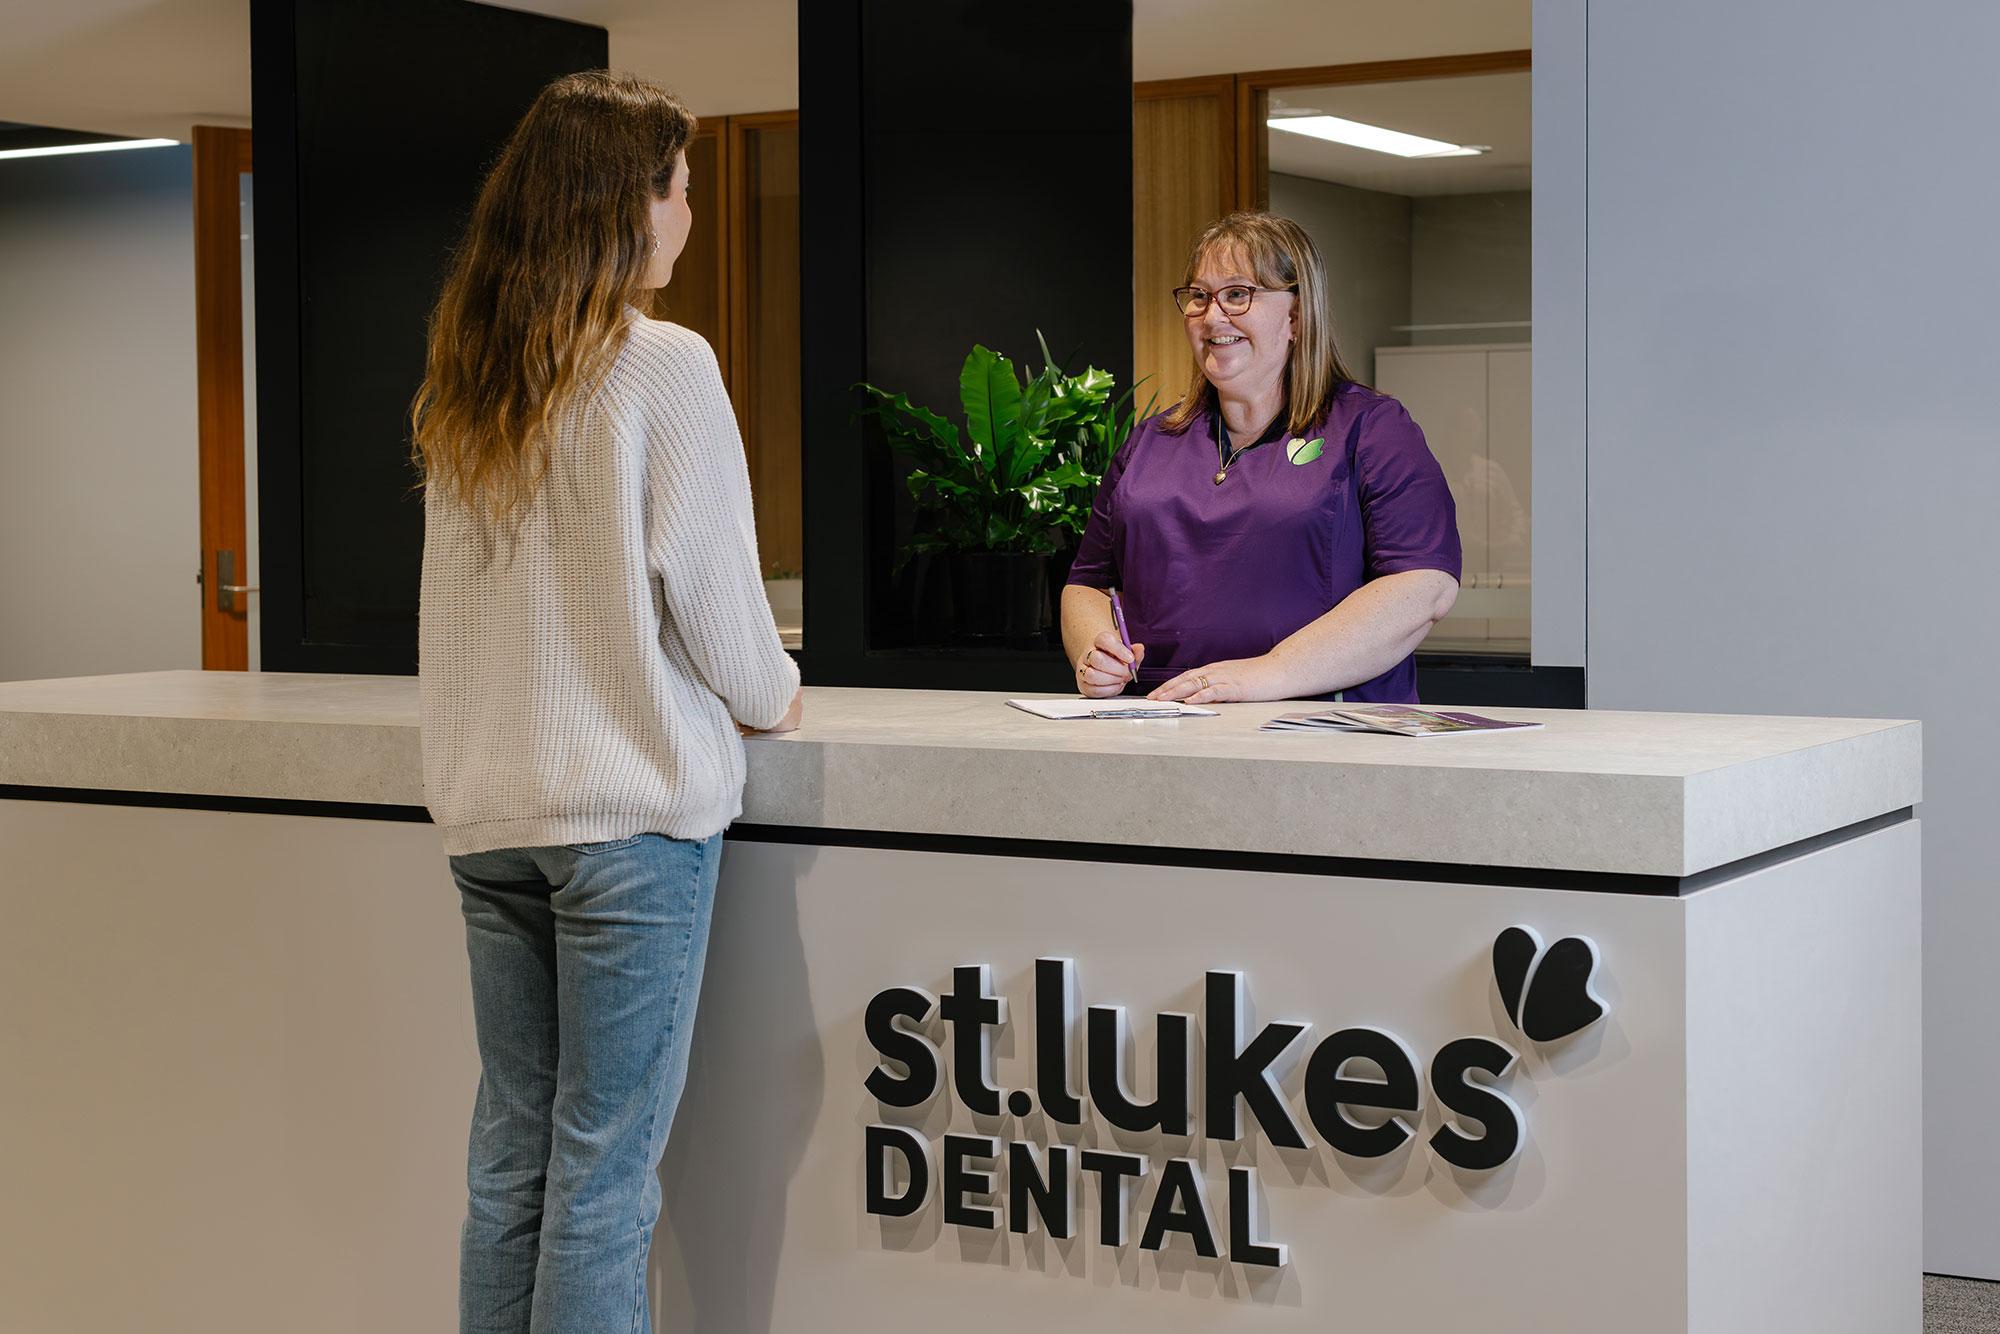 St Lukes Dental practices